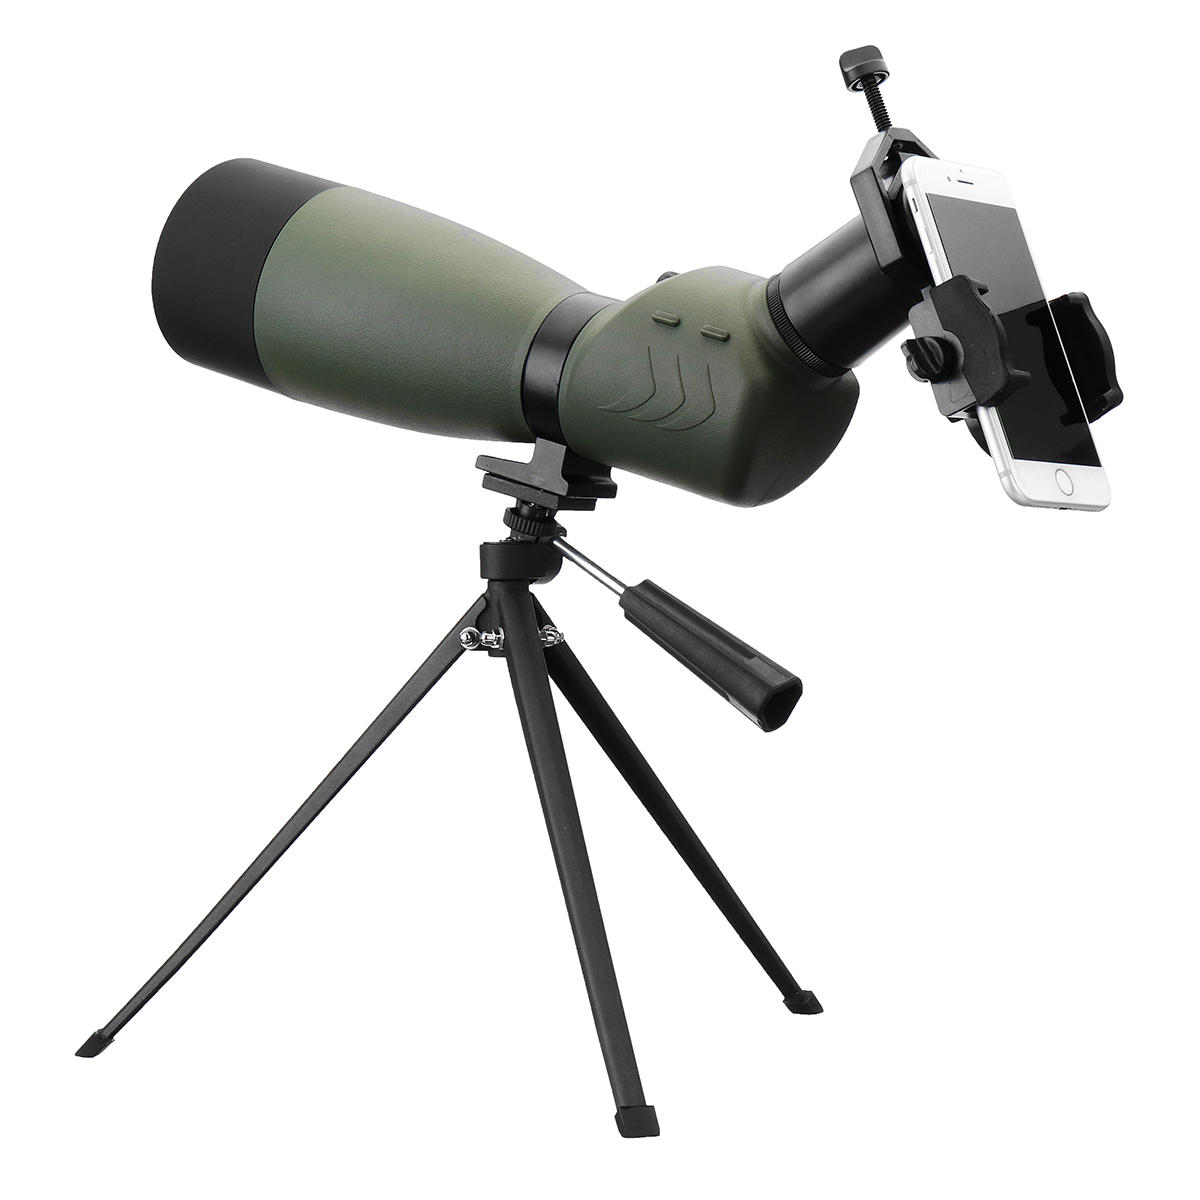 Télescope monoculaire HD optique 25-75x70 pour l'observation des oiseaux en extérieur avec trépied et support pour téléphone